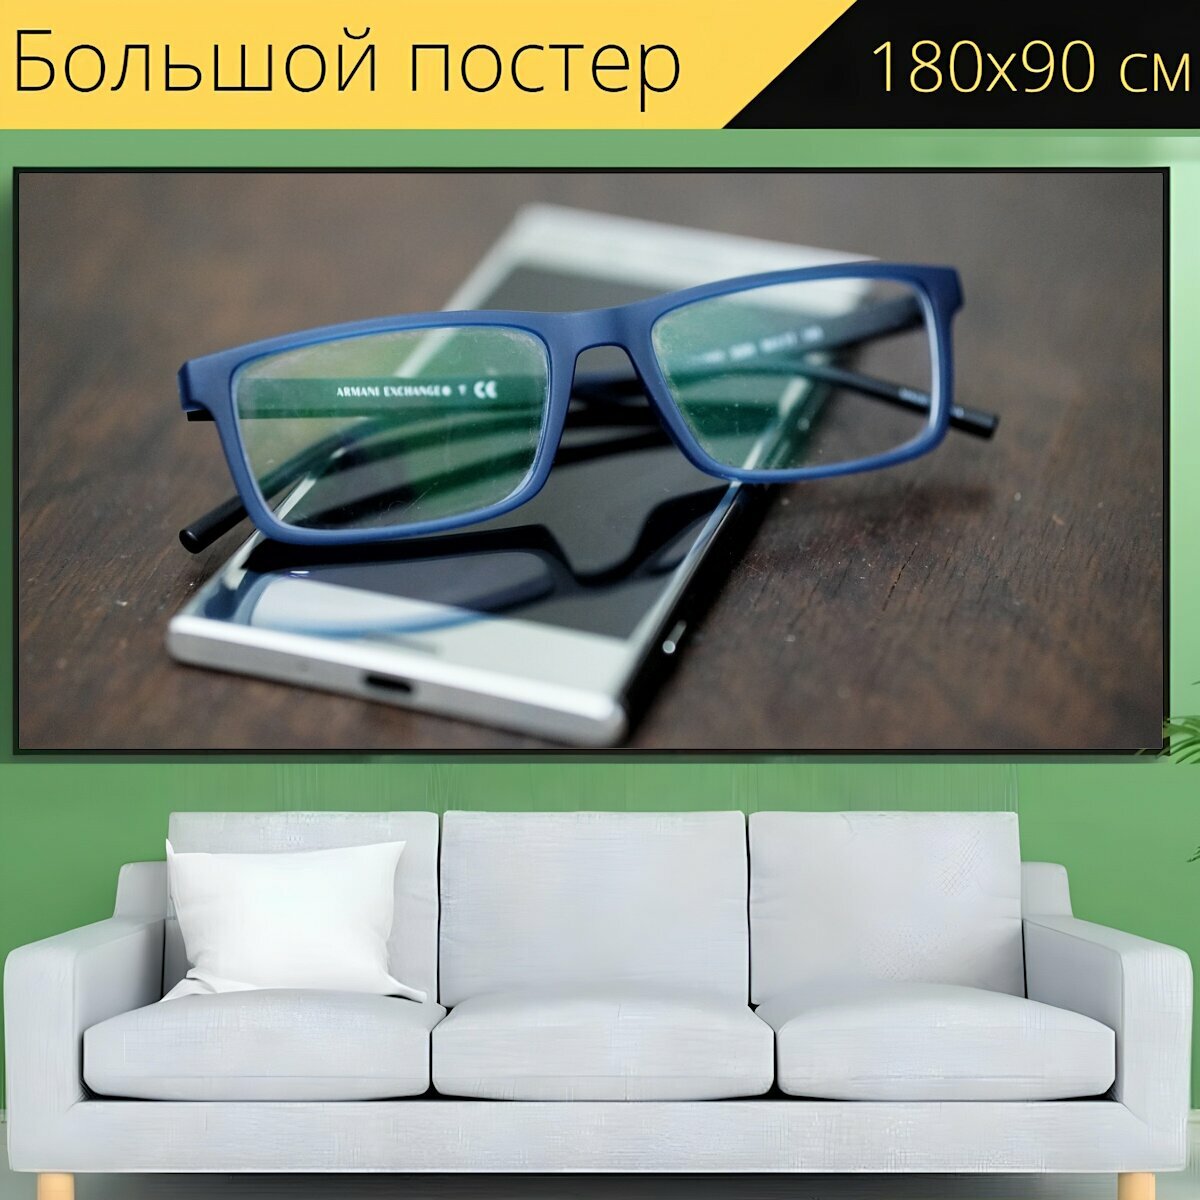 Большой постер "Очки, телефон, очки для чтения" 180 x 90 см. для интерьера